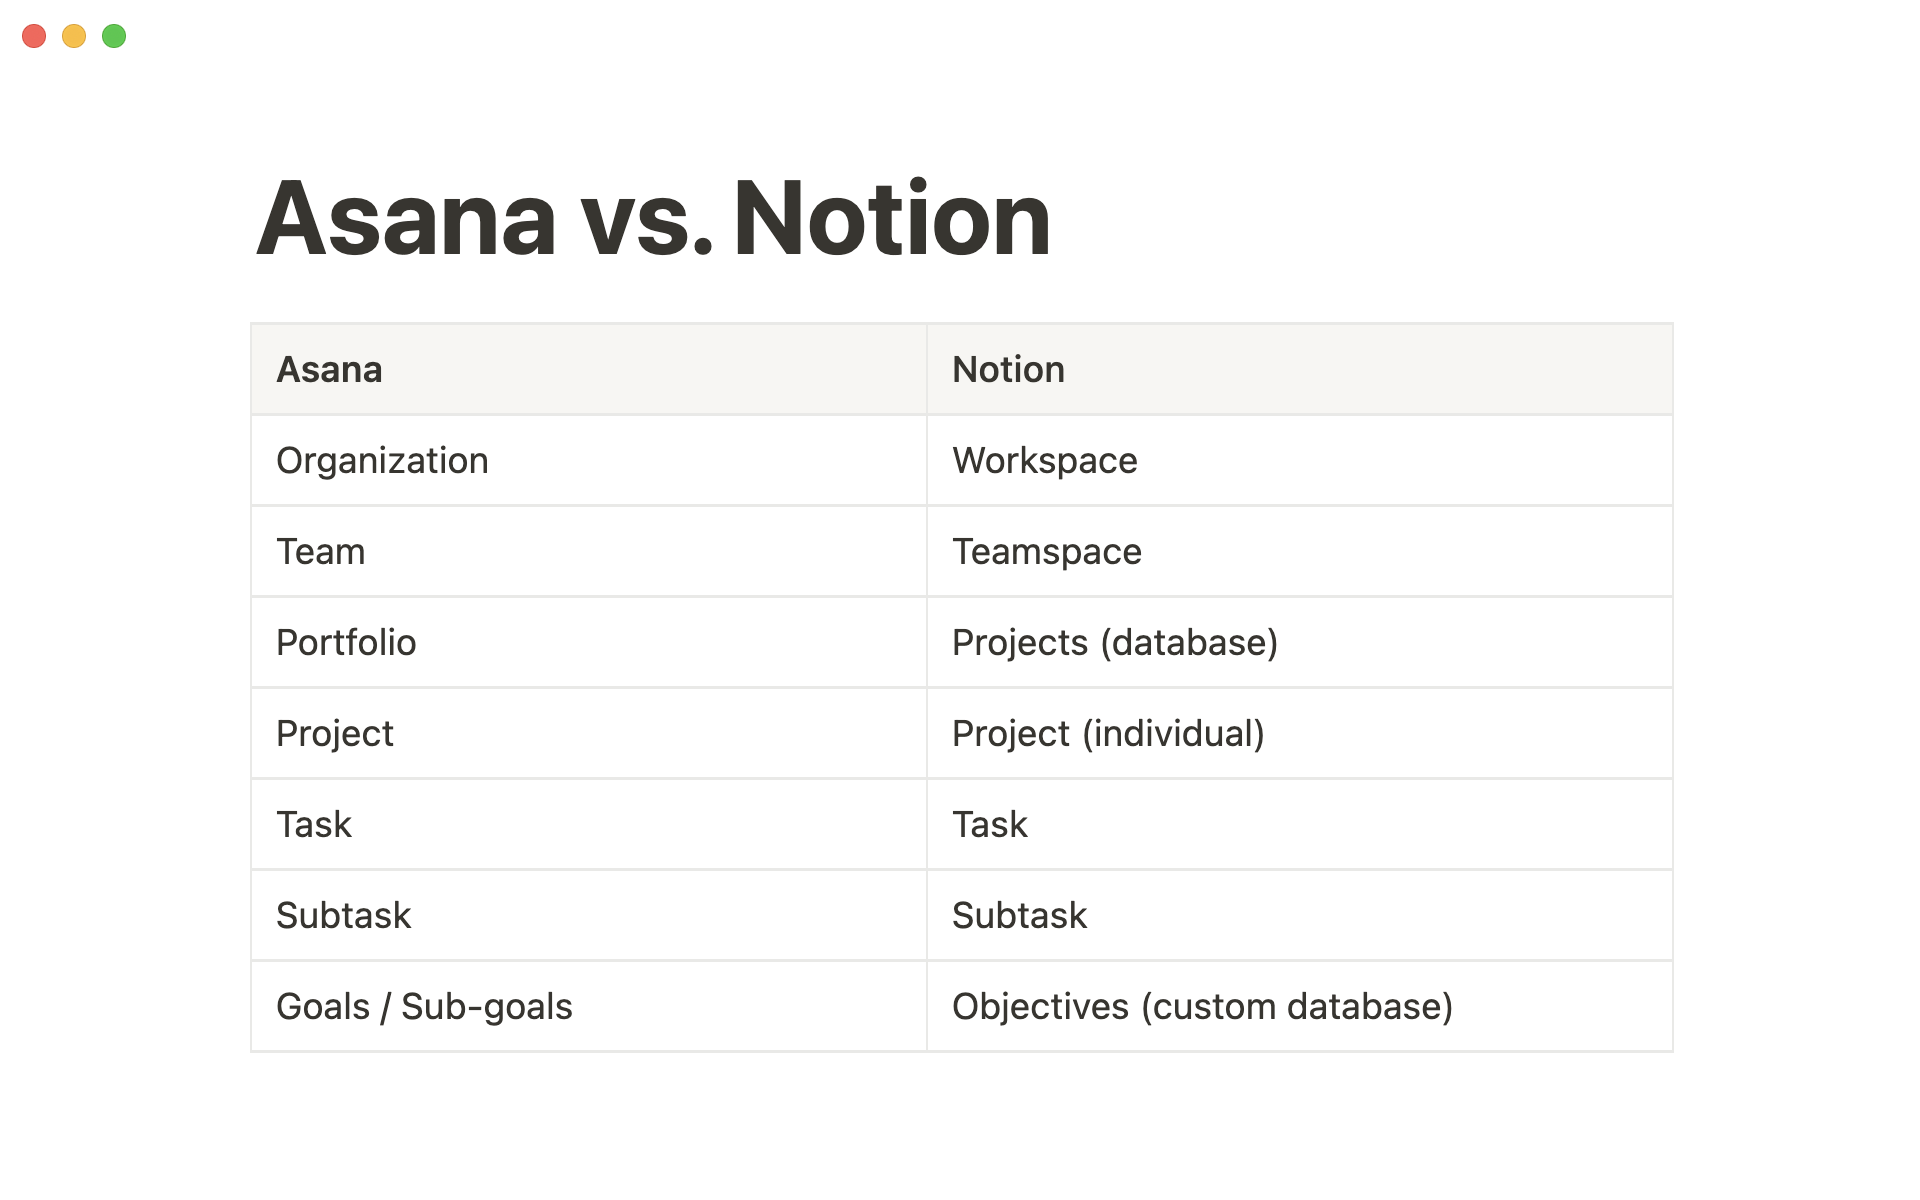 Here's how Asana translates into Notion.